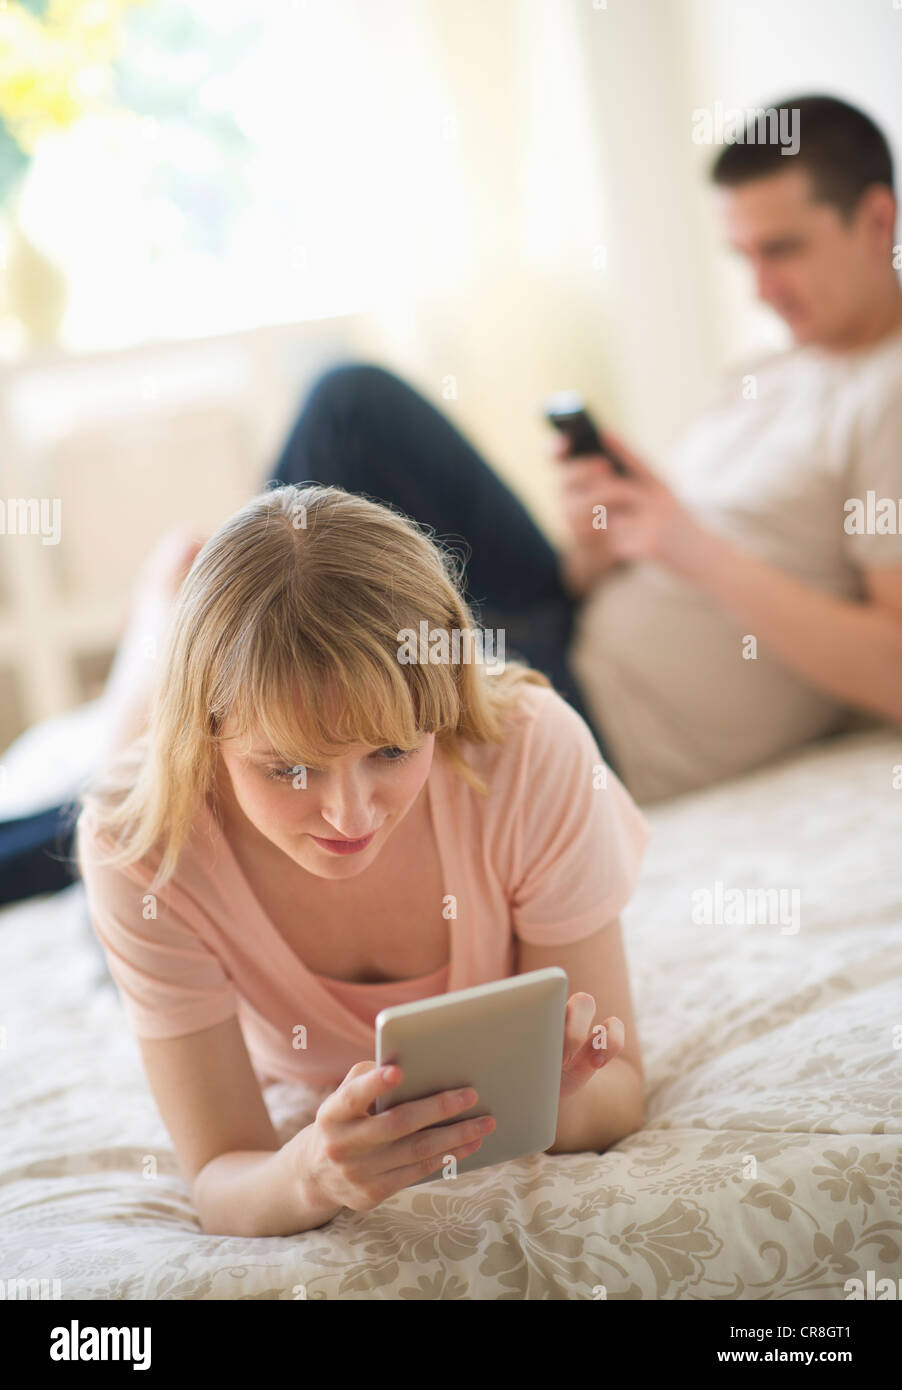 USA, New Jersey, Jersey City, Couple lying on bed et l'aide de dispositifs numériques Banque D'Images